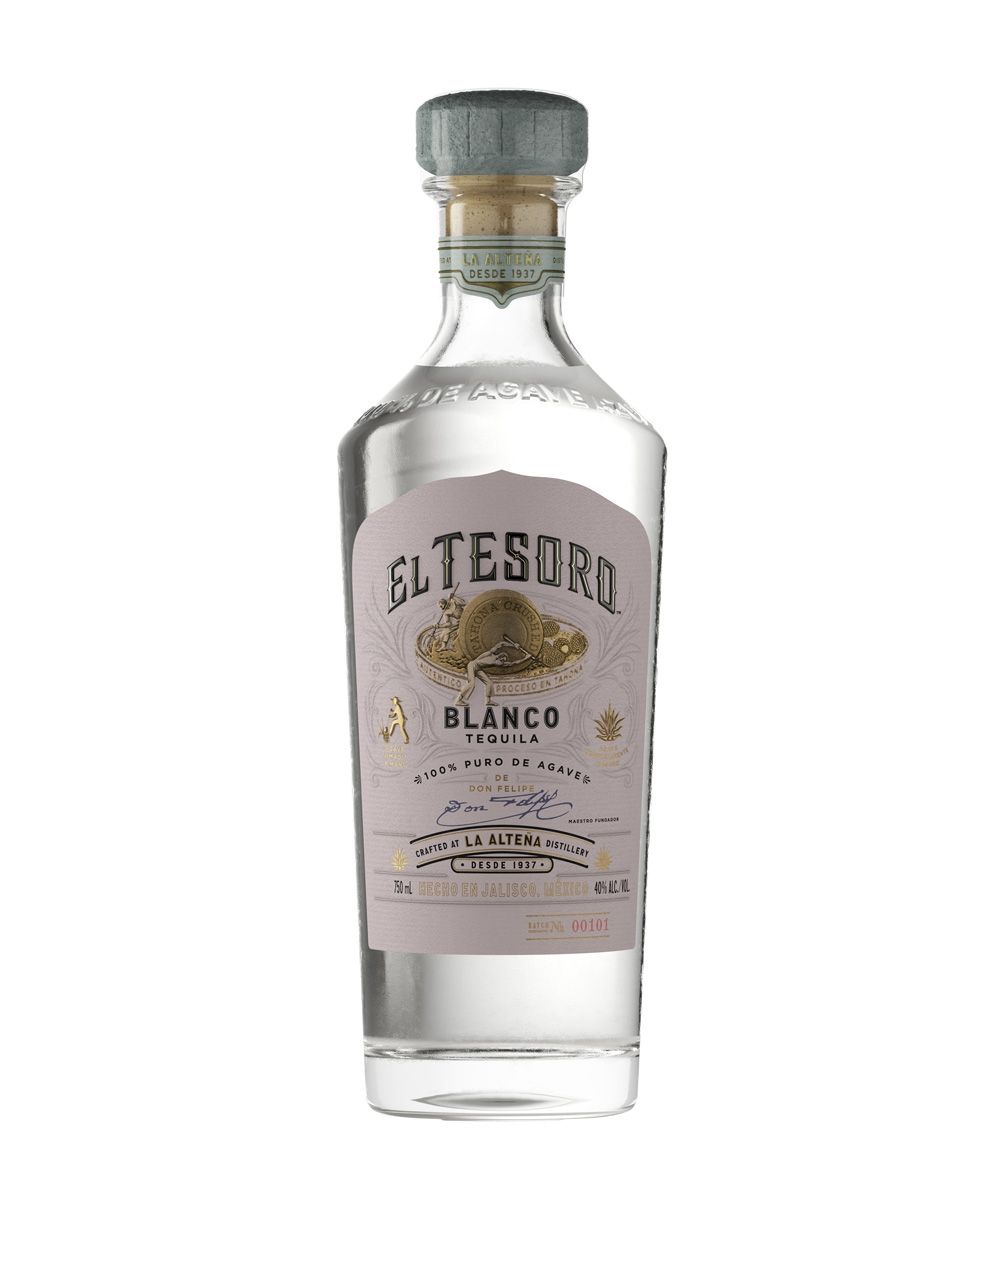 El Tesoro Blanco Tequila bottle